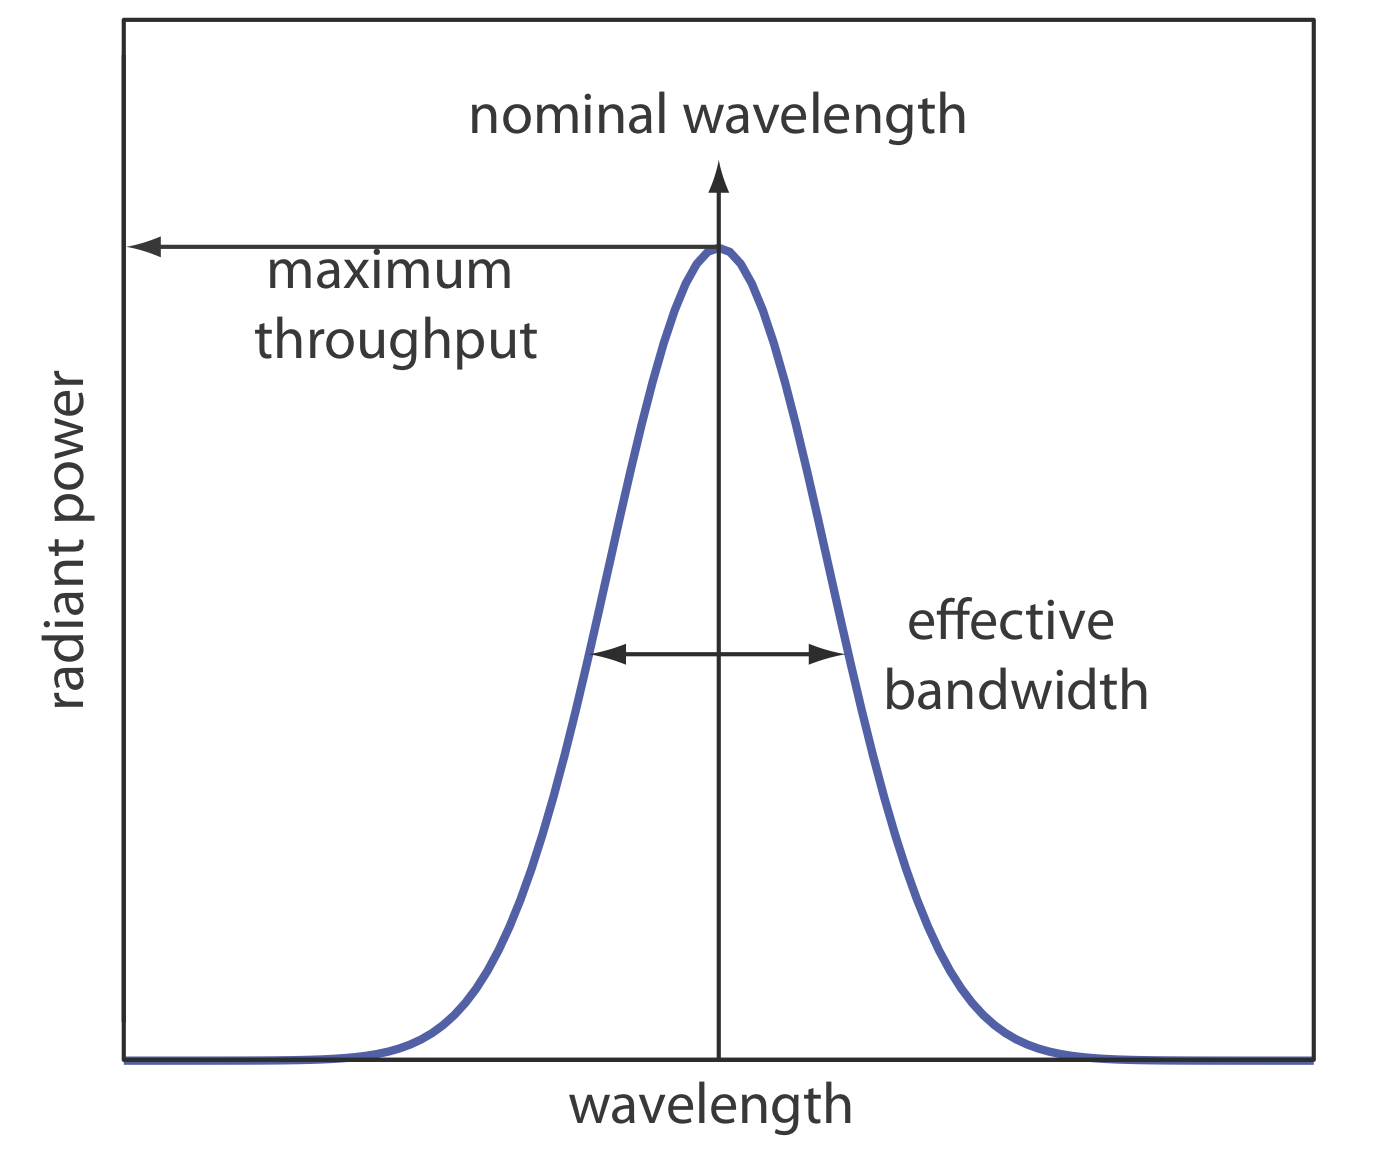 Radiación saliendo de un selector de longitud de onda mostrando la longitud de onda nominal de la banda y su ancho de banda